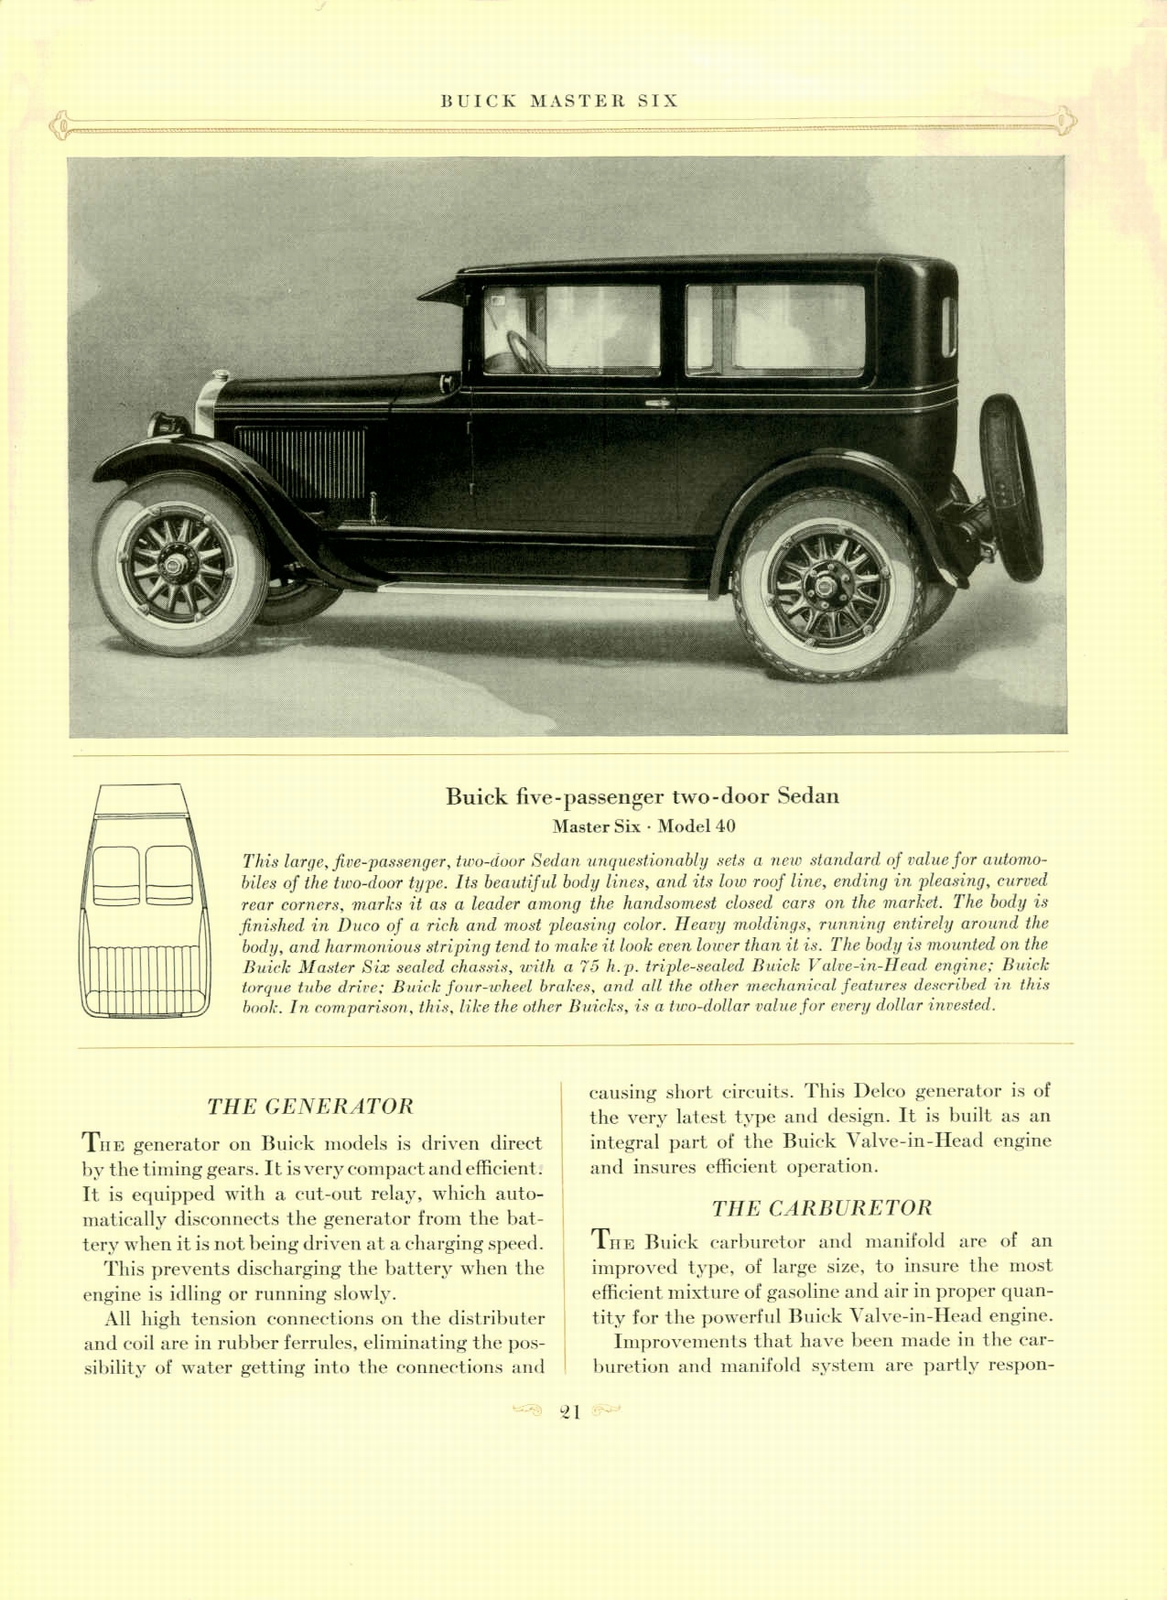 n_1926 Buick Brochure-21.jpg